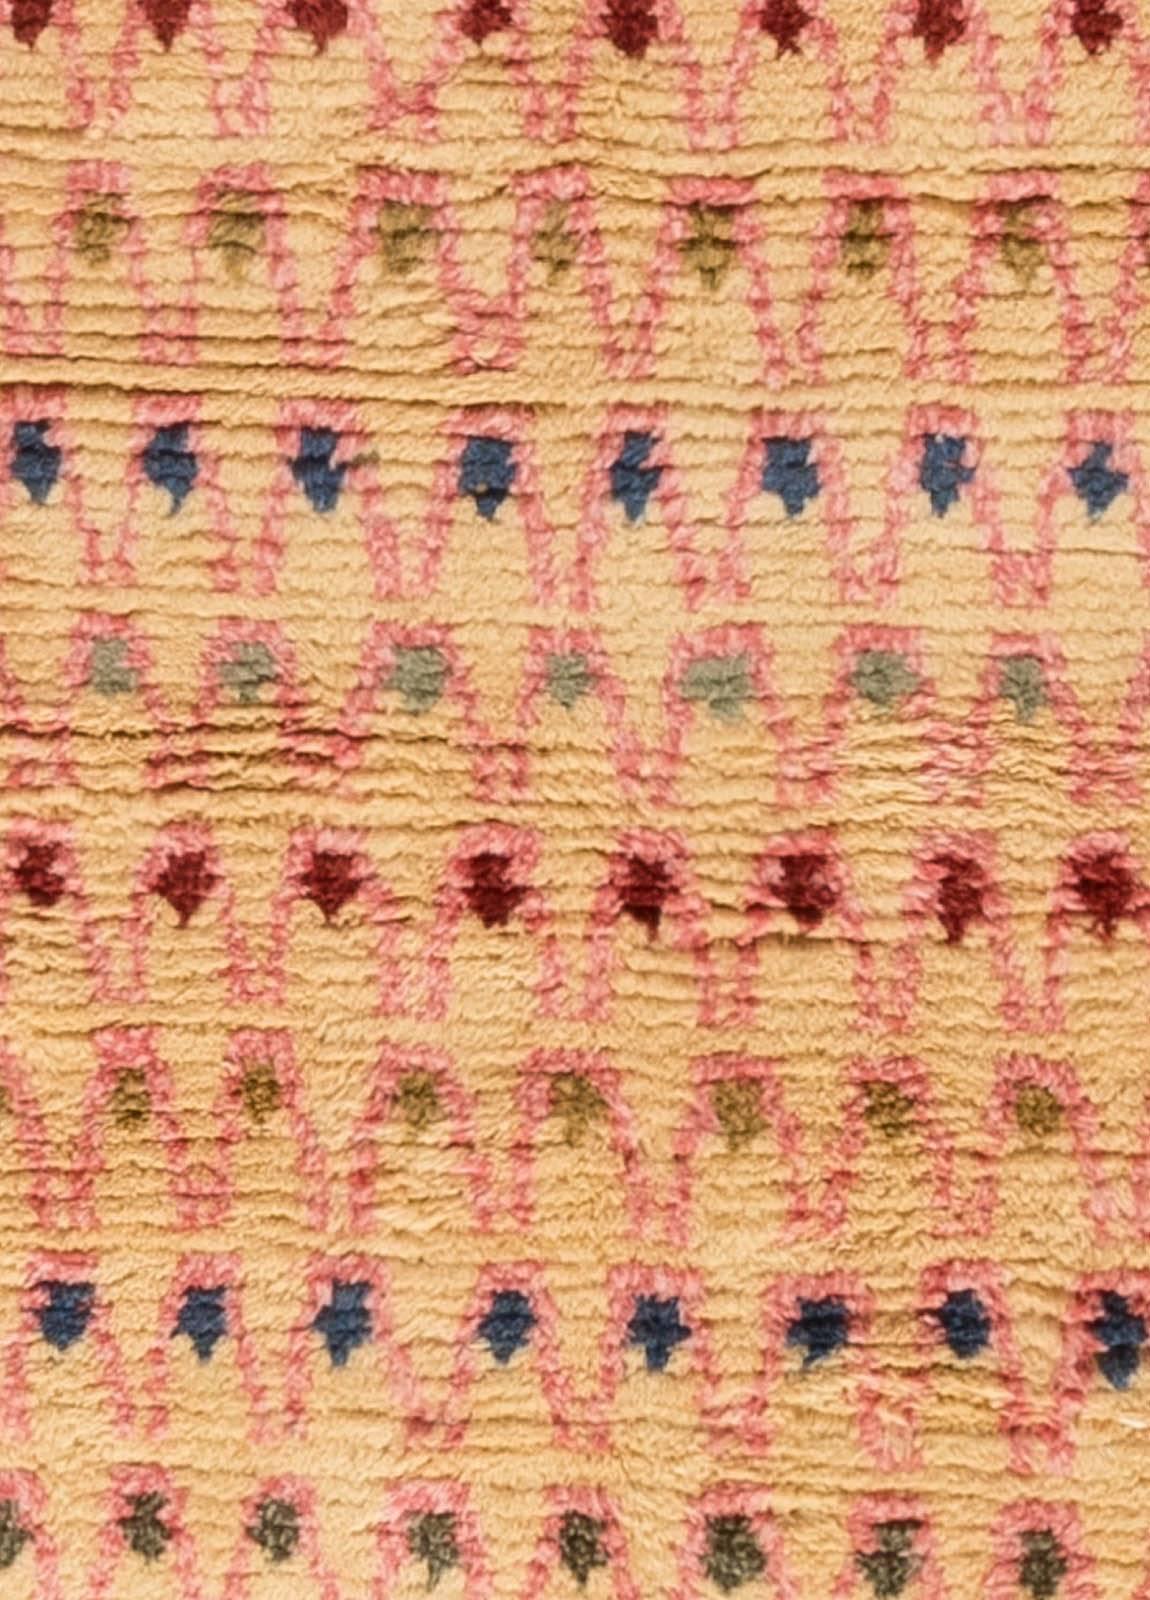 Zeitgenössischer Rya-Regenbogenteppich aus handgefertigter Wolle von Doris Leslie Blau.
Größe: 8'10